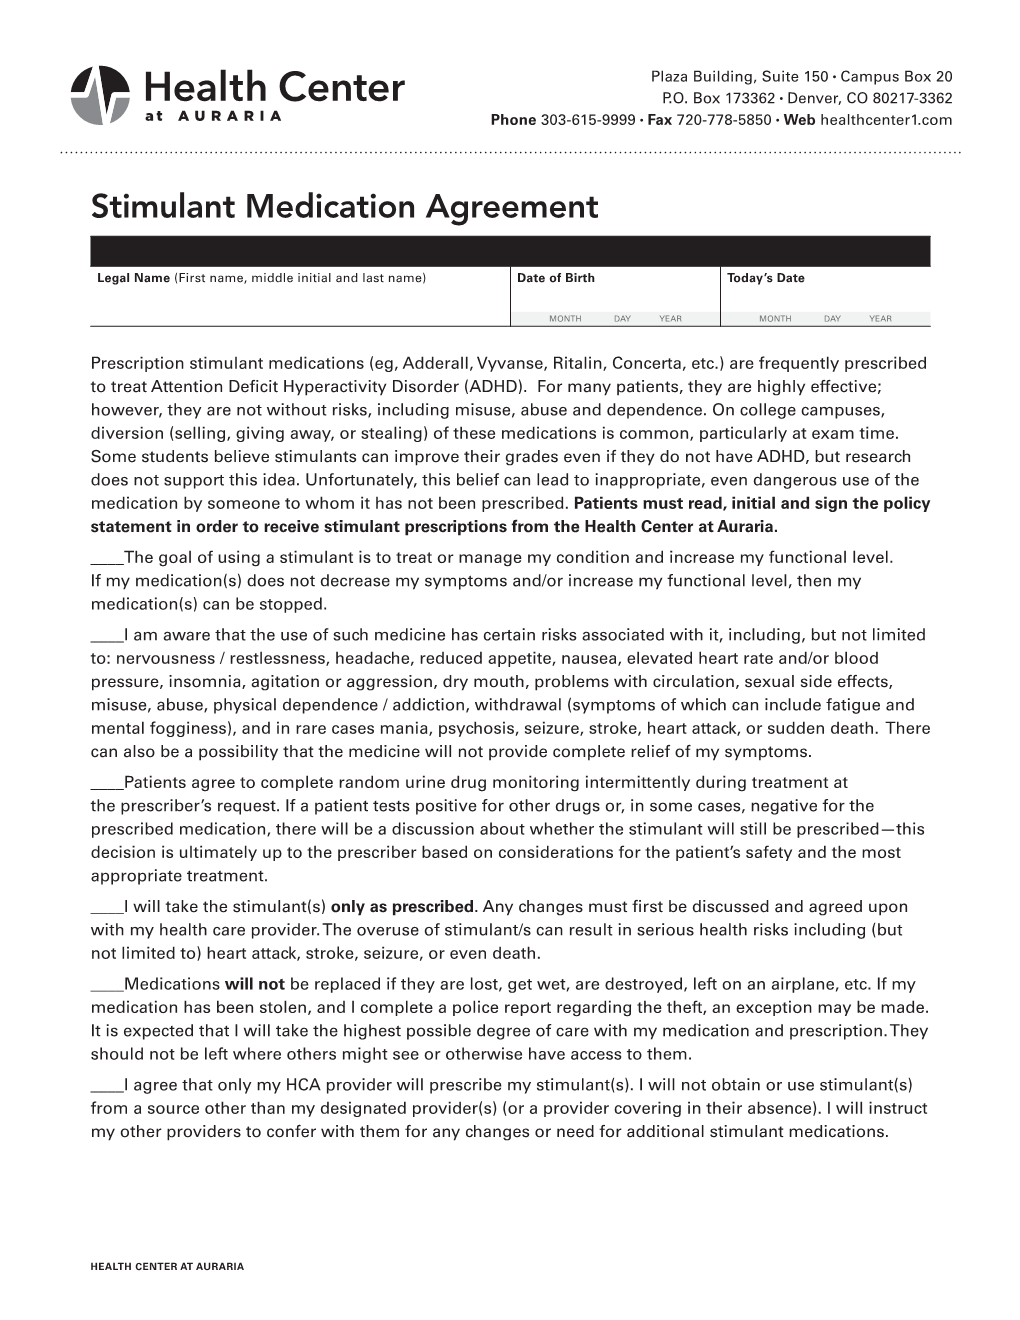 Stimulant Medication Agreement